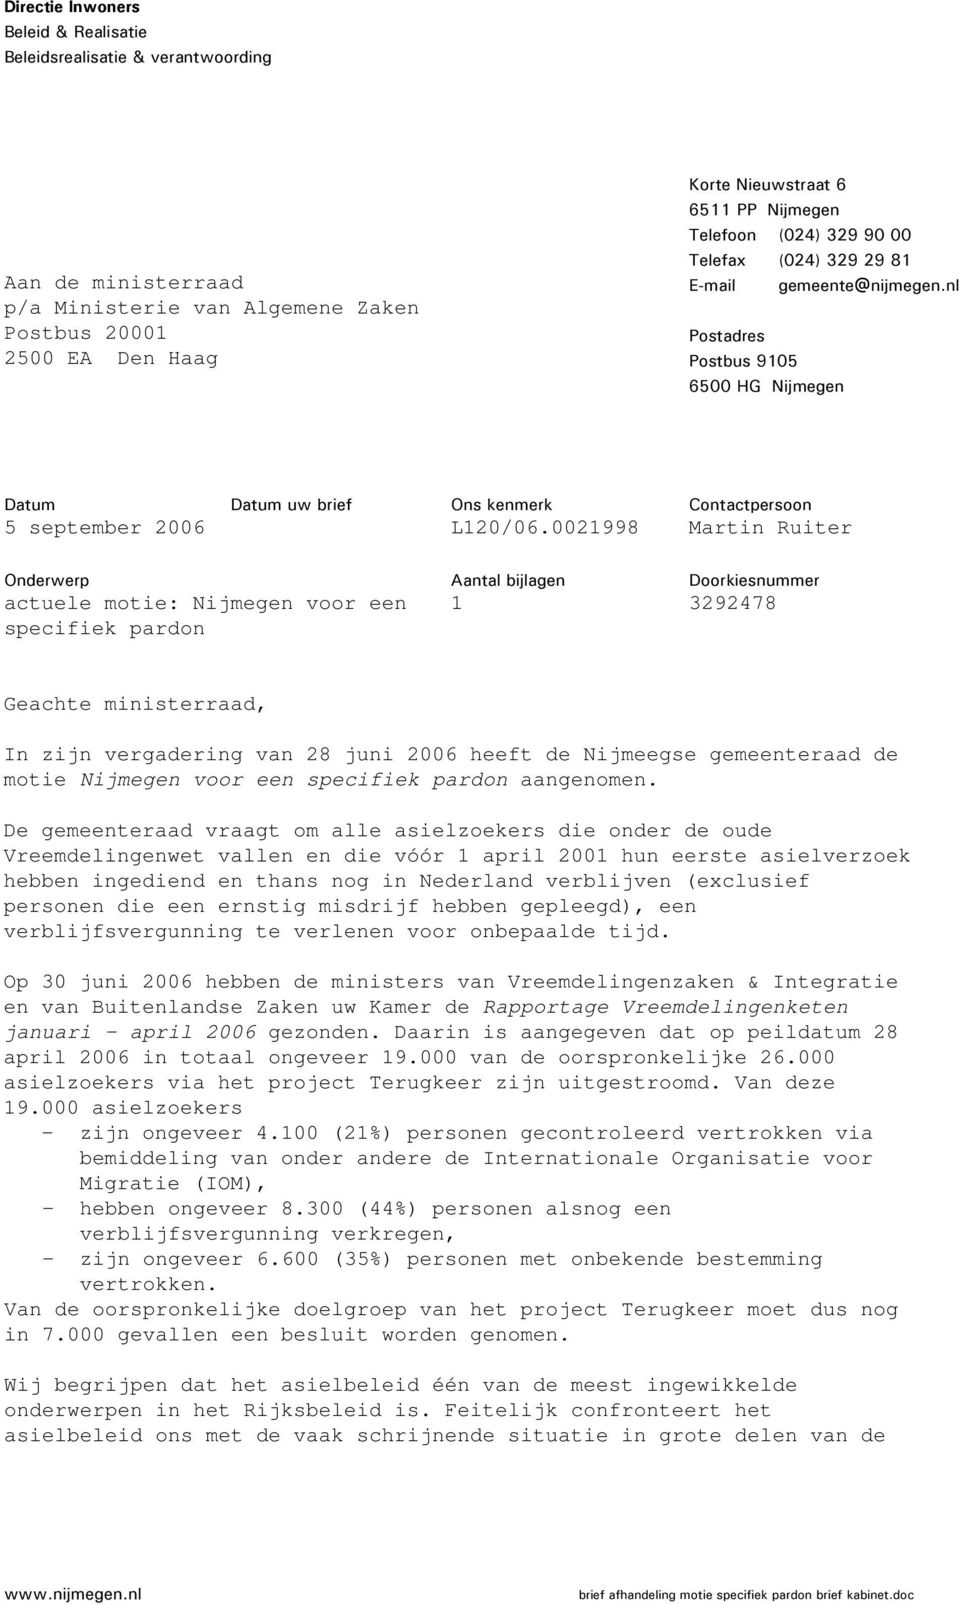 002998 Contactpersoon Martin Ruiter Onderwerp actuele motie: Nijmegen voor een specifiek pardon Aantal bijlagen Doorkiesnummer 3292478 Geachte ministerraad, In zijn vergadering van 28 juni 2006 heeft